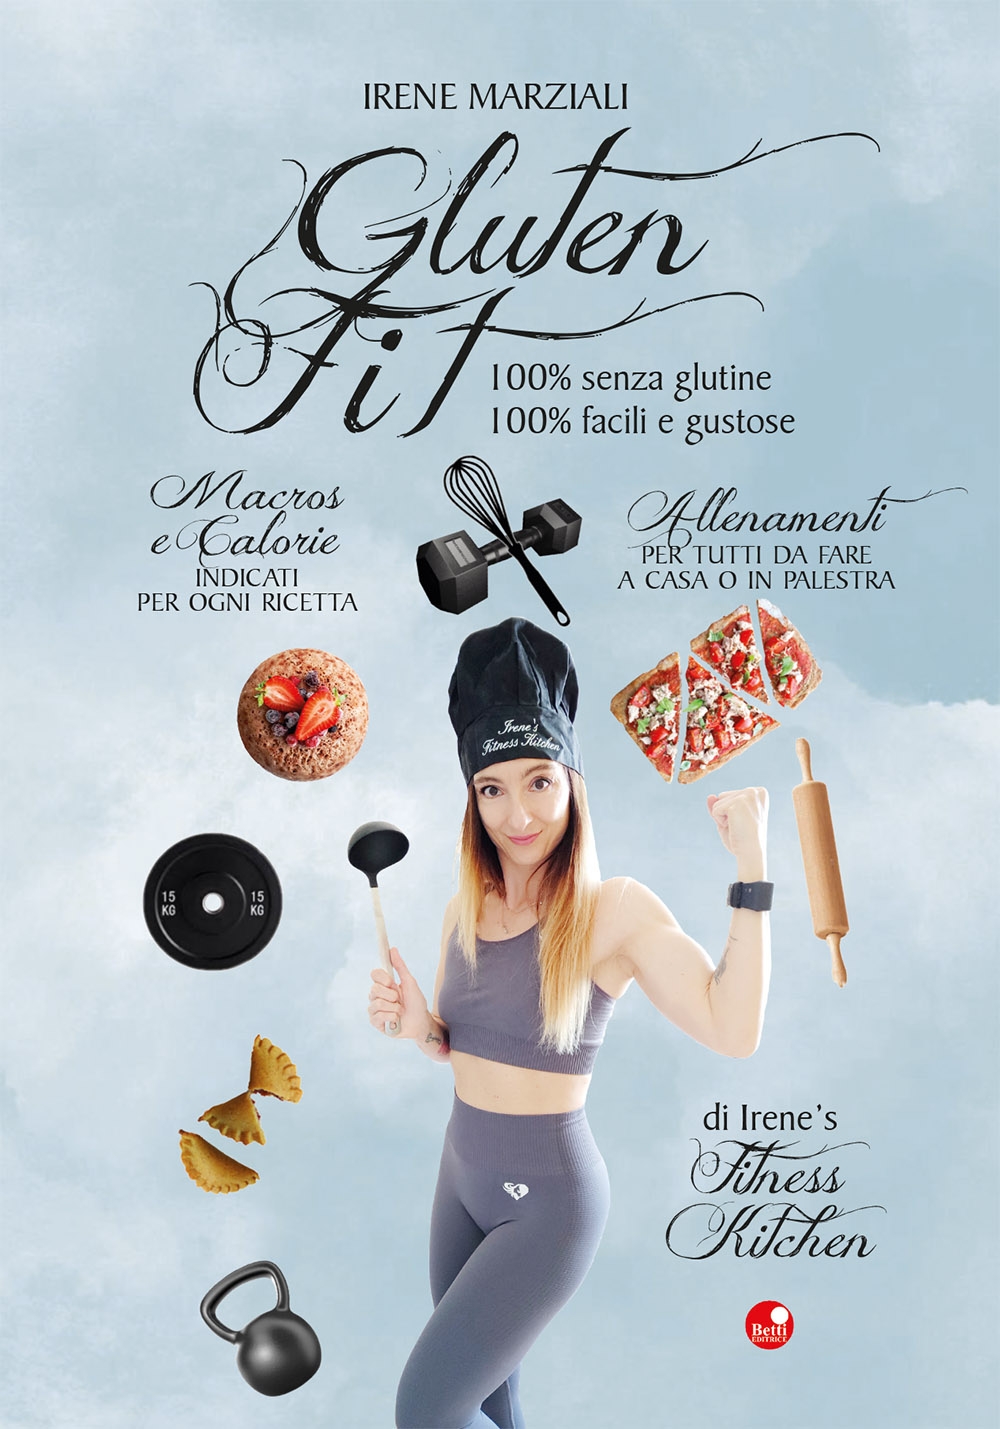 Gluten fit. 100% senza glutine, 100% facili e gustose.